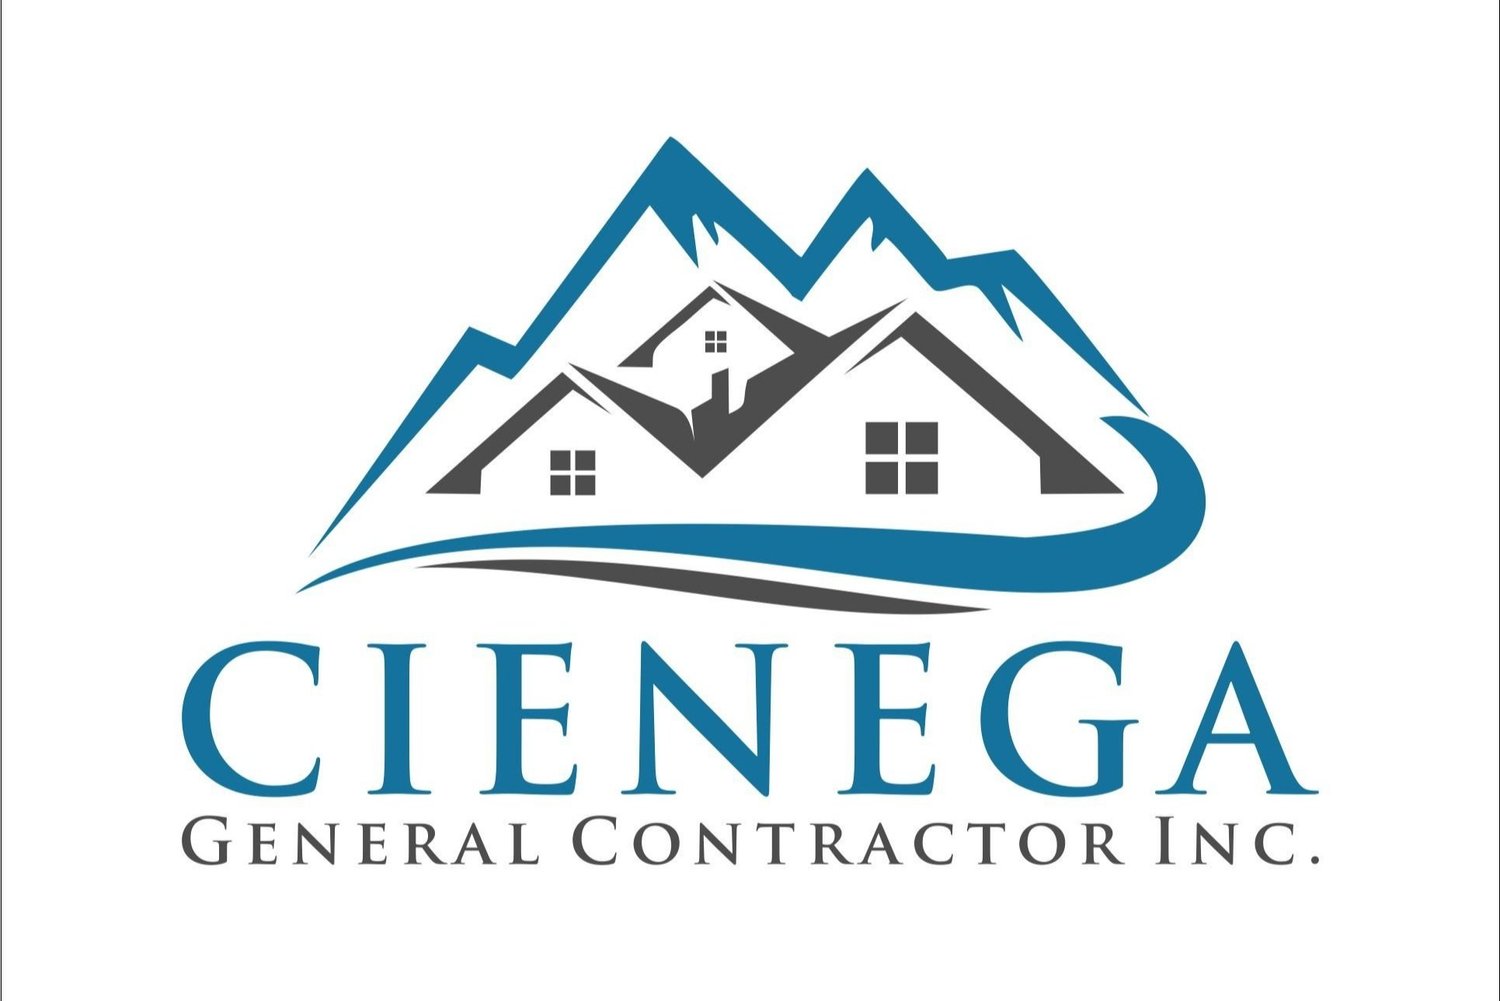 Cienega General Contractor Inc.